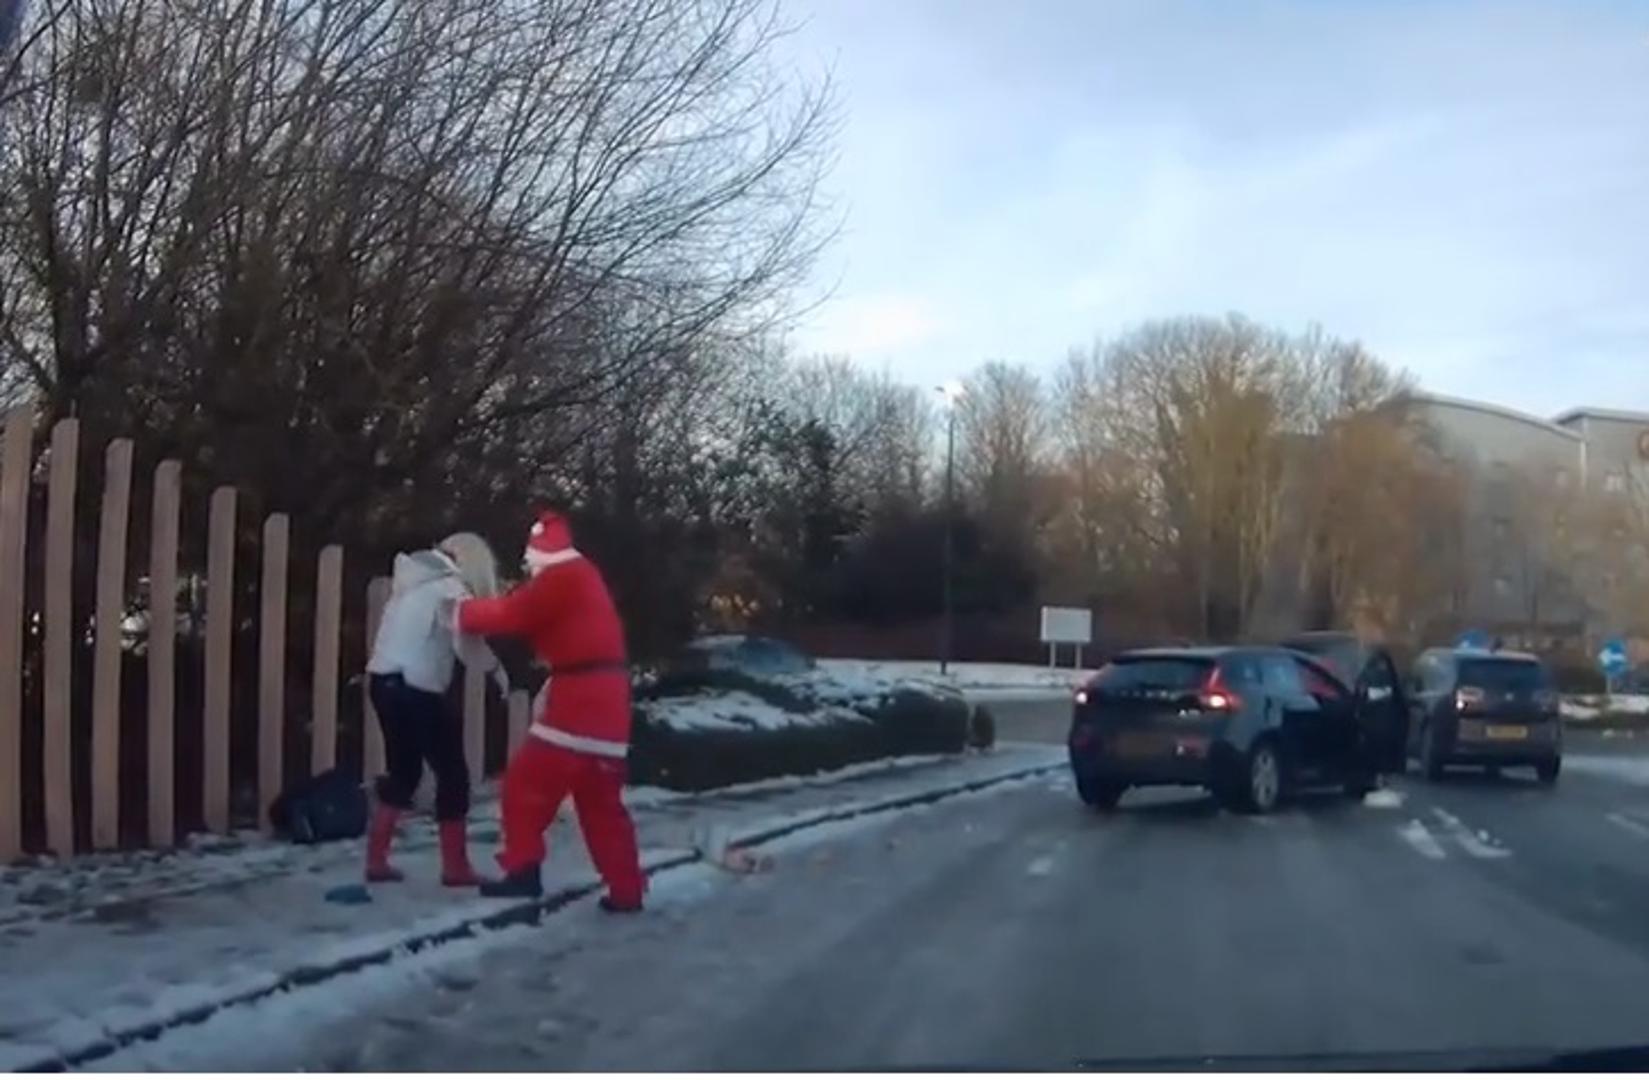 Nitko nije očekivao da će iz automobila izaći – ni manje ni više nego – Djed Božićnjak.